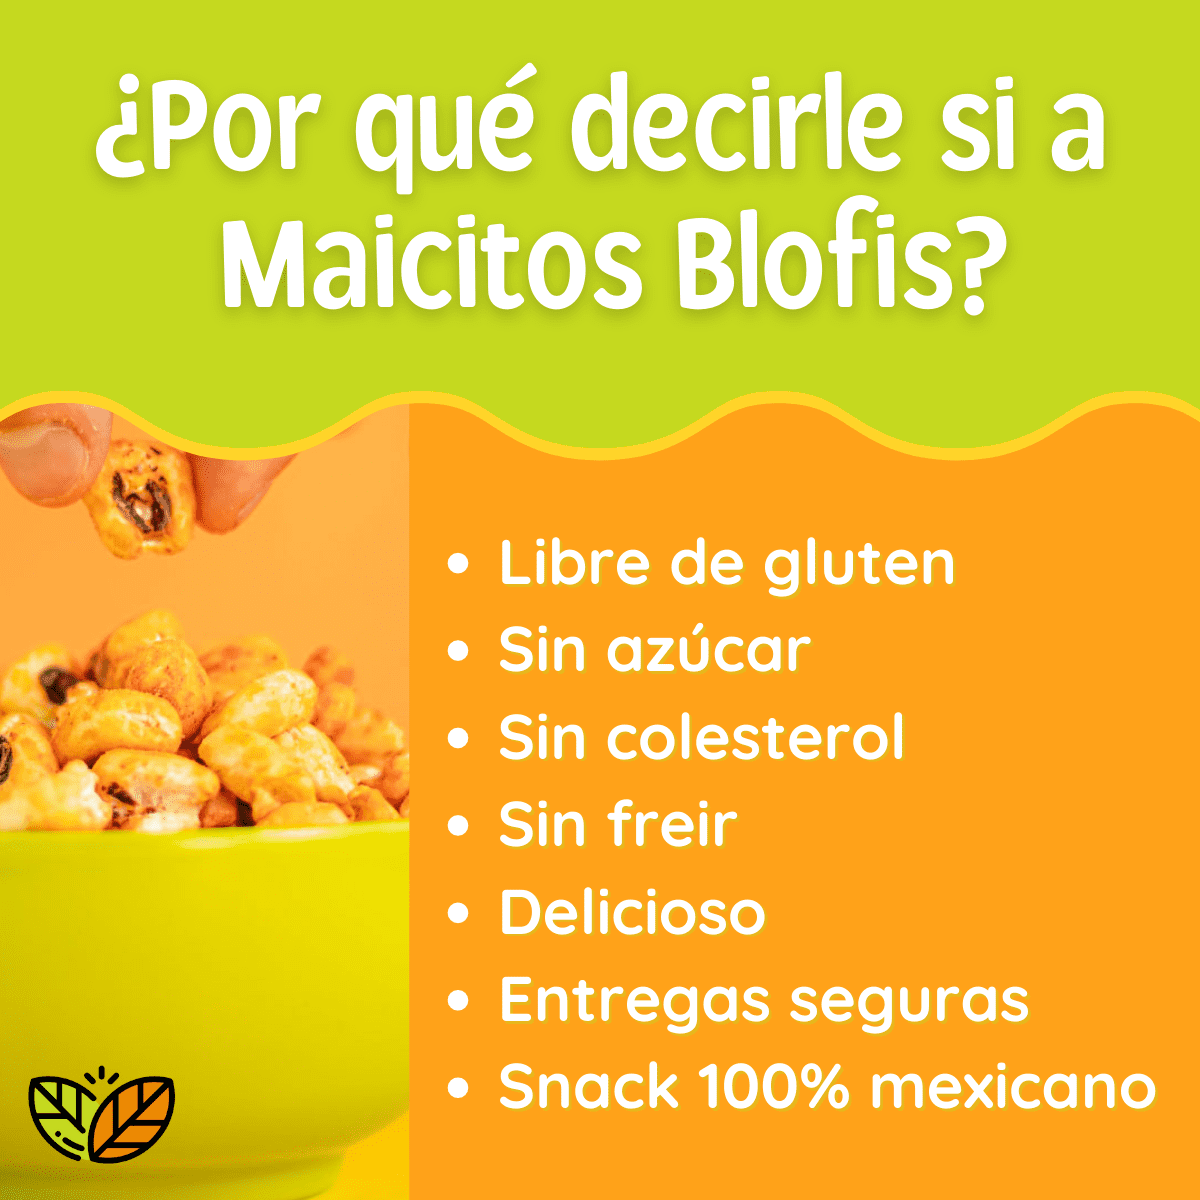 razones para confiar en blofis proveedores de maicitos fabrica de maiz inflado en mexico